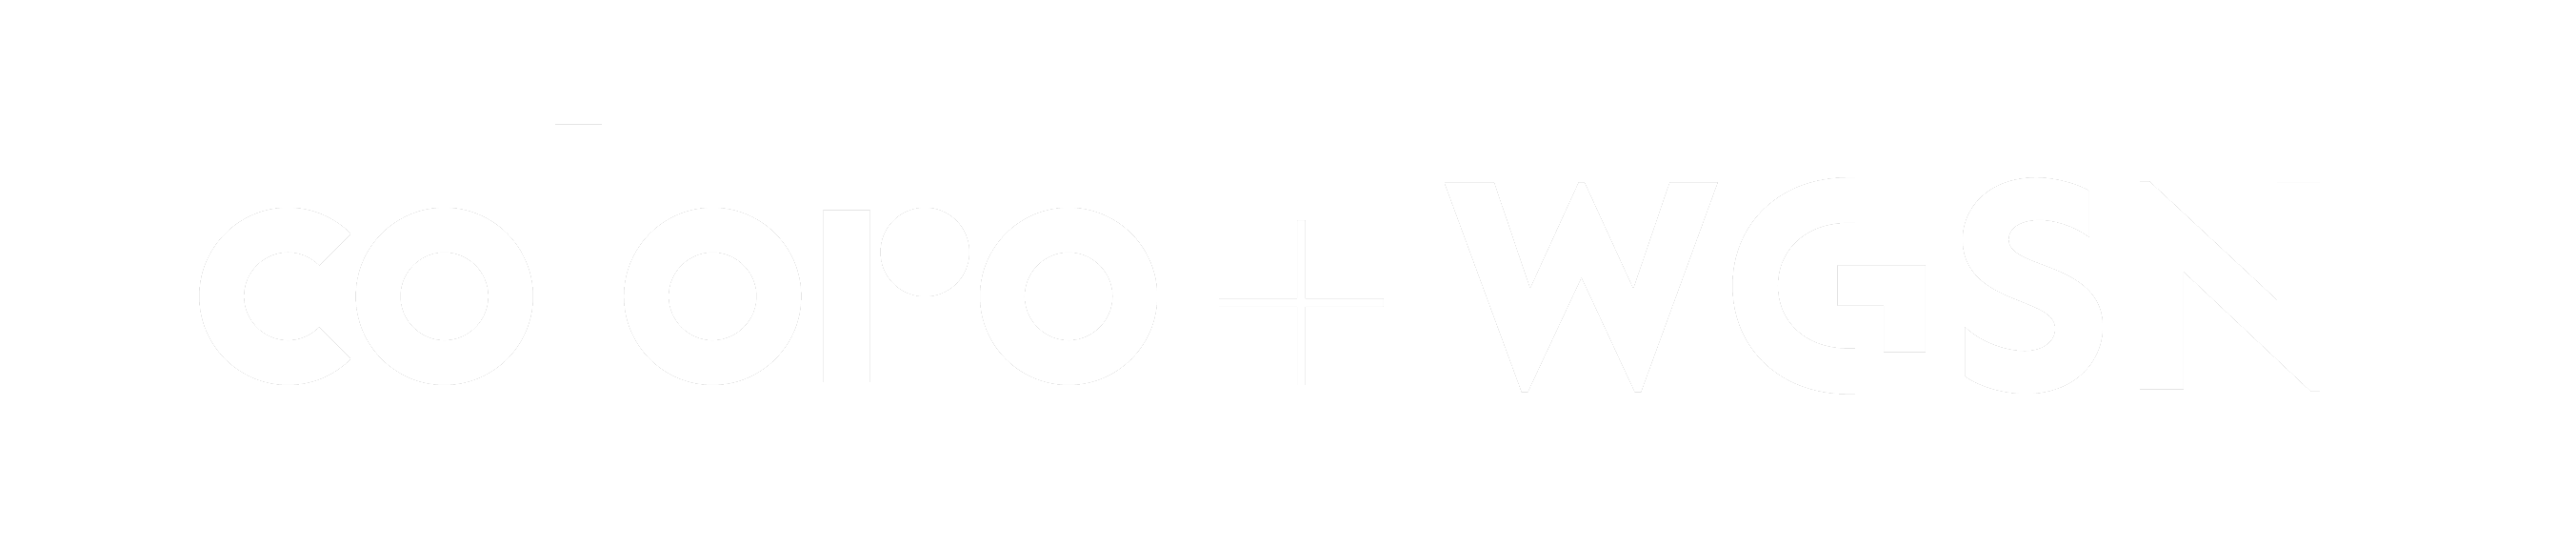 coloro-wgsn-logo-2021–wht